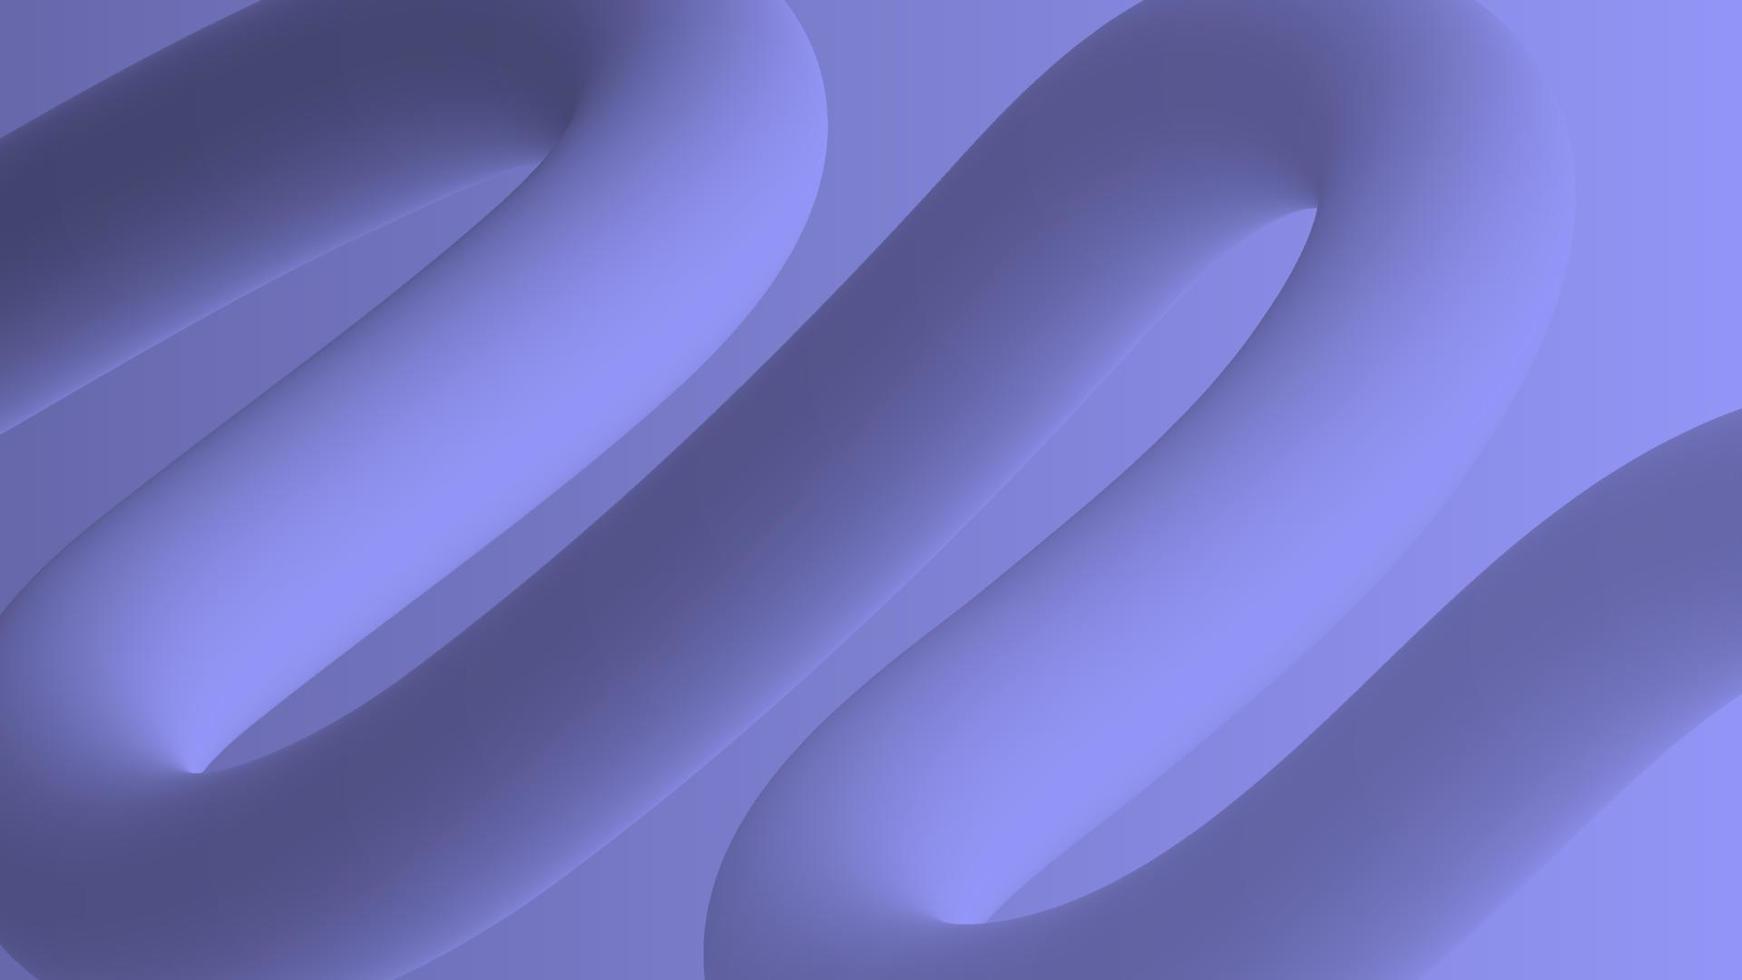 abstrato 3d roxo. bandeira de onda de redemoinho violeta. ilustração vetorial. vetor